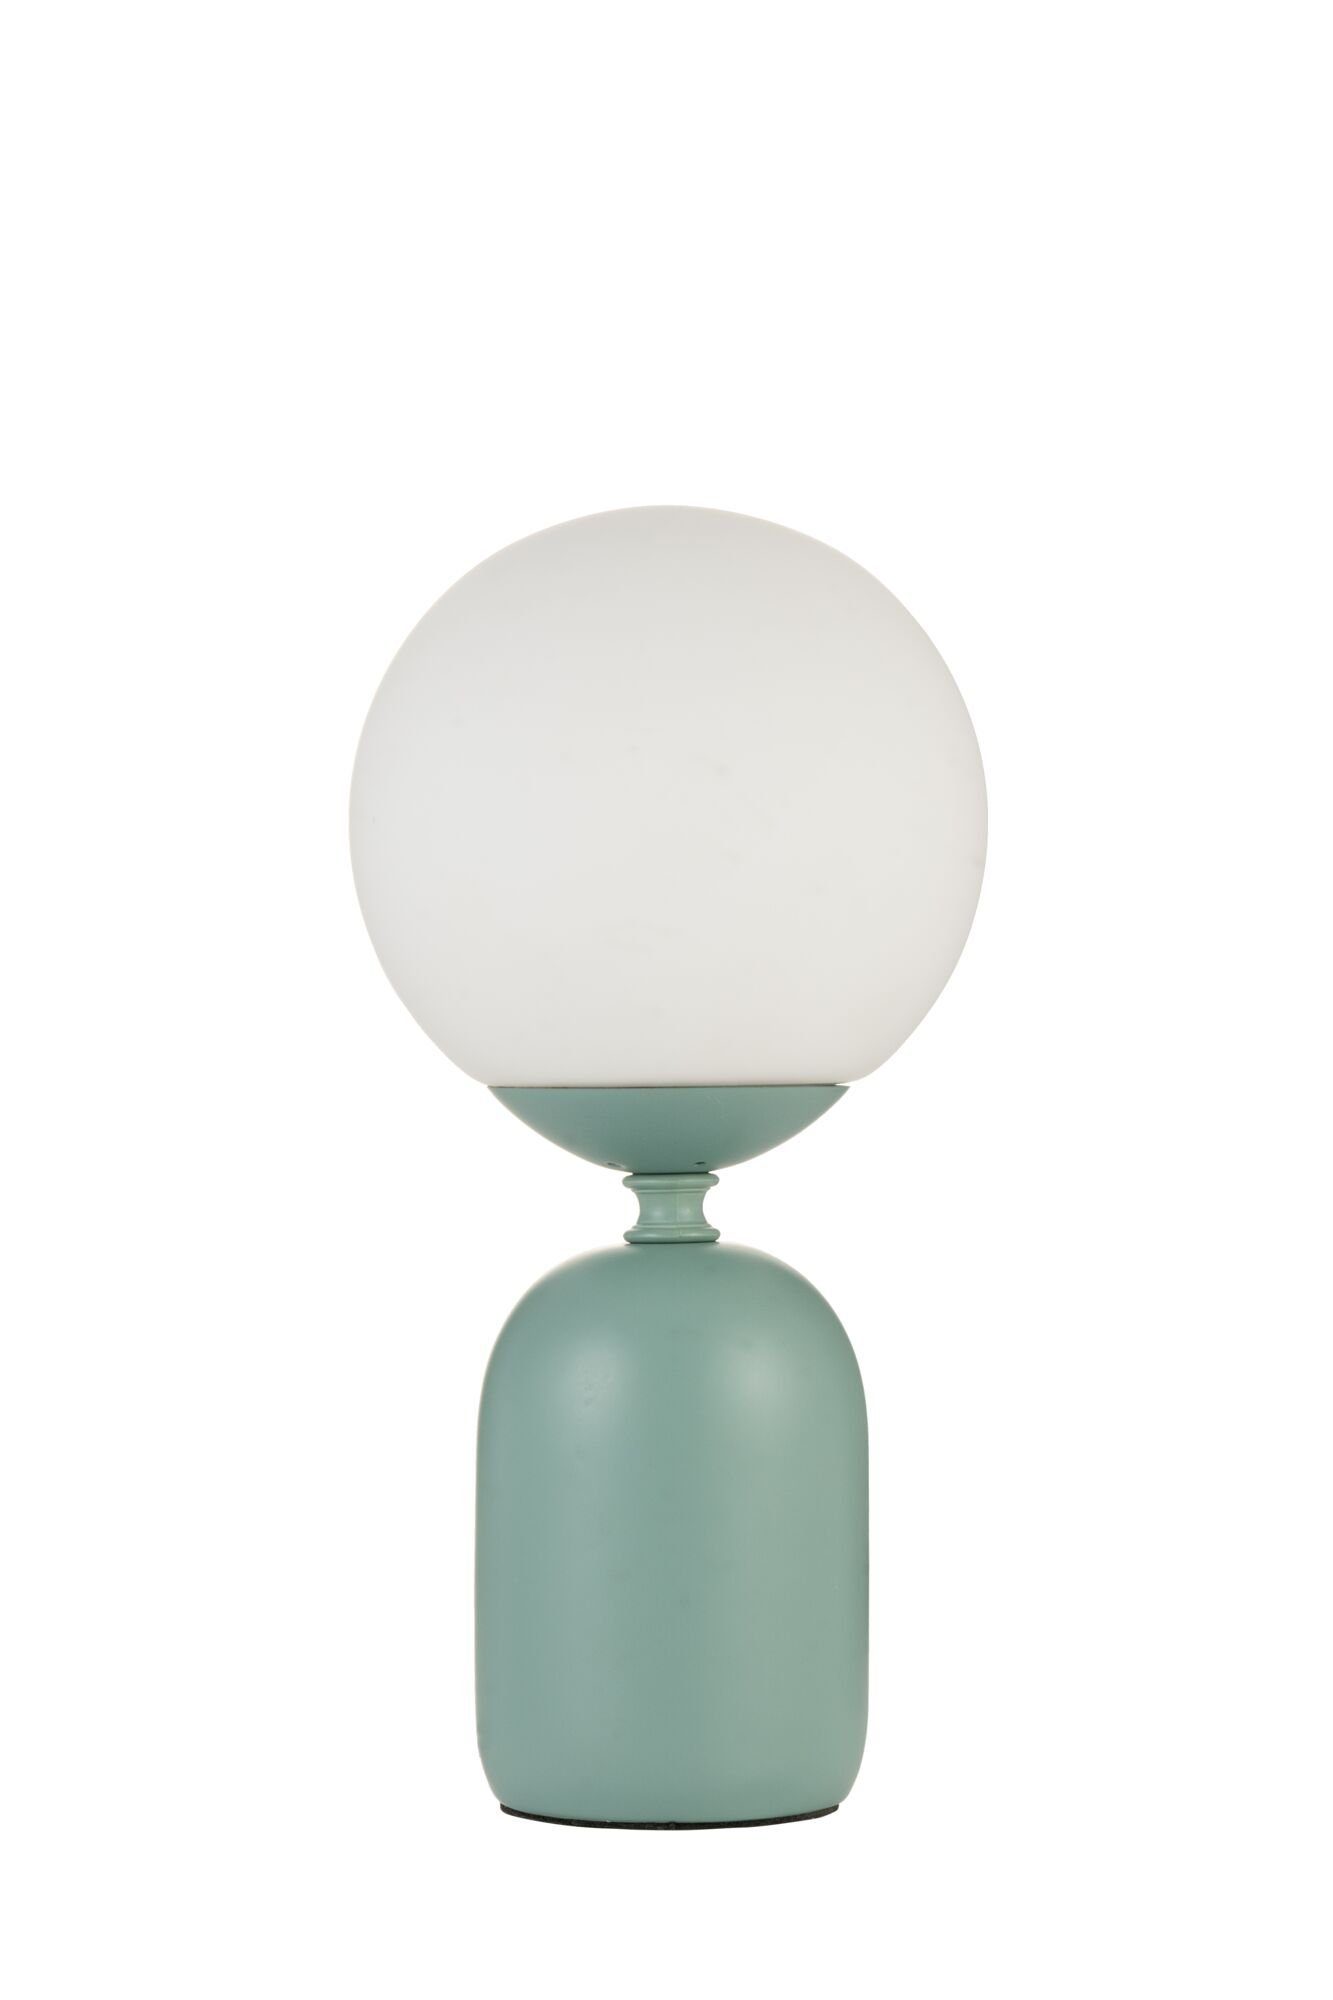 Pauleen Tischleuchte Glowing Charm max ohne Keramik, E14 20W Leuchtmittel, Grün/weiß